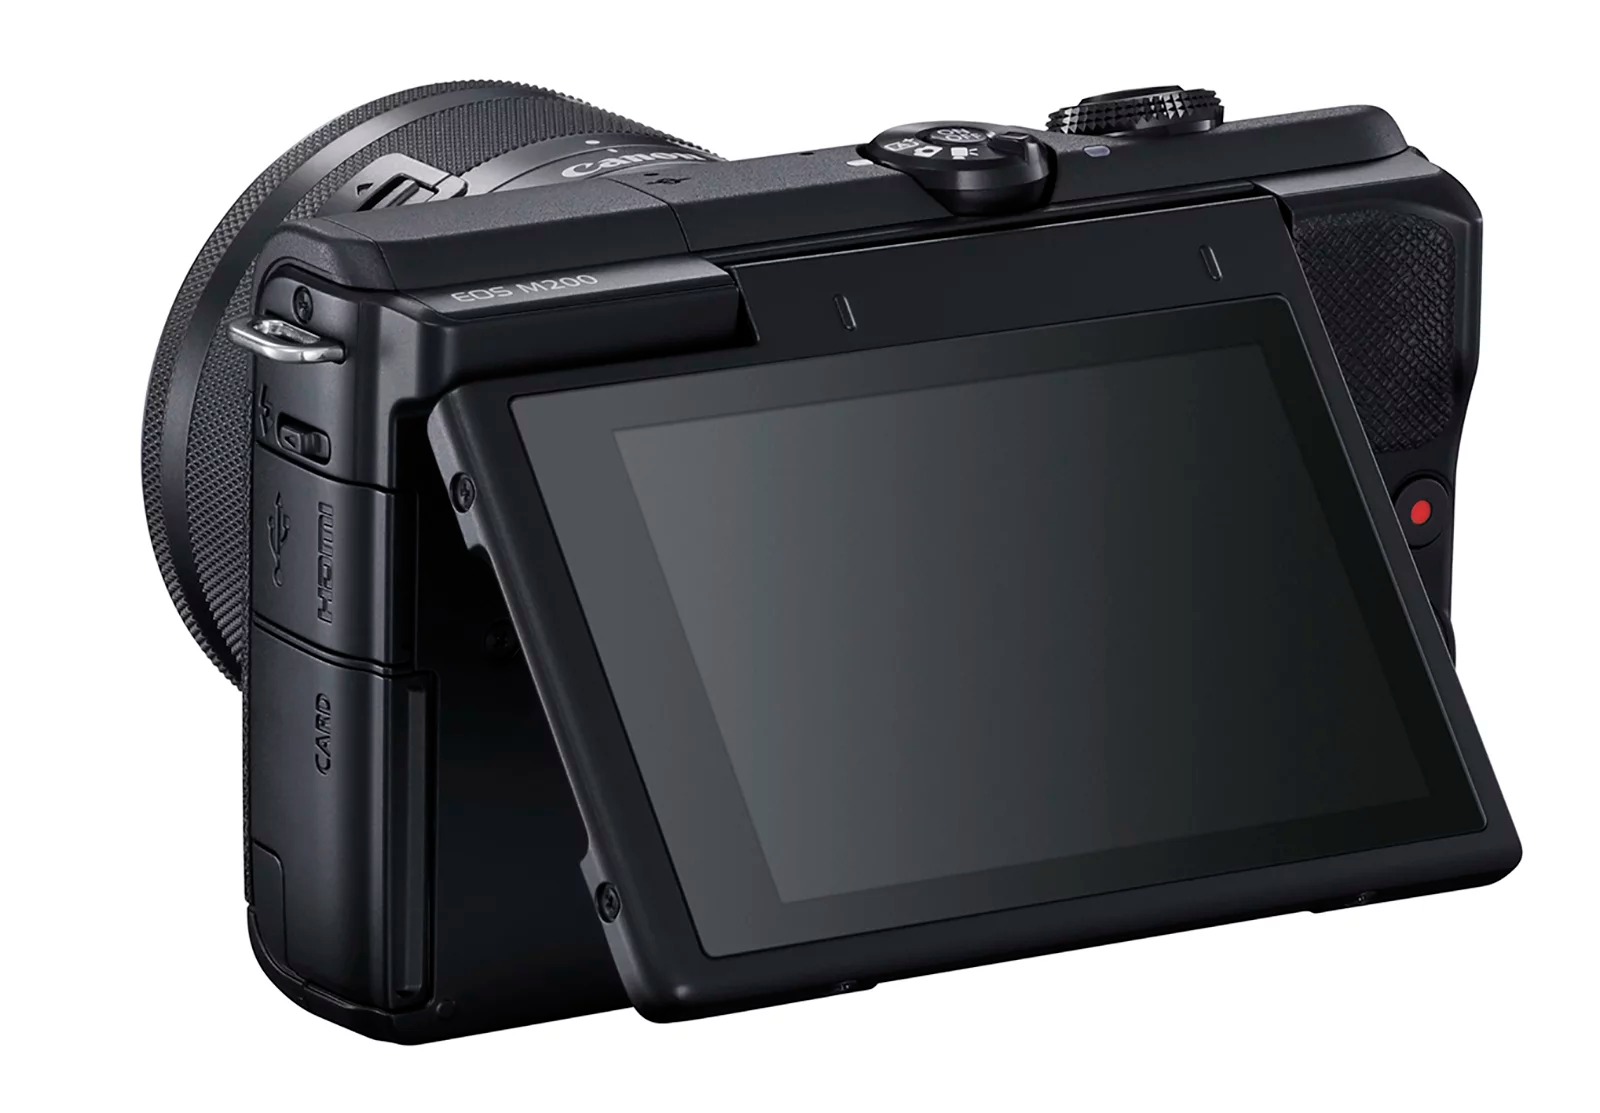 Canon ra mắt máy ảnh không gương lật EOS M200,
với khả năng lấy nét nhận diện mắt và quay video 4K.